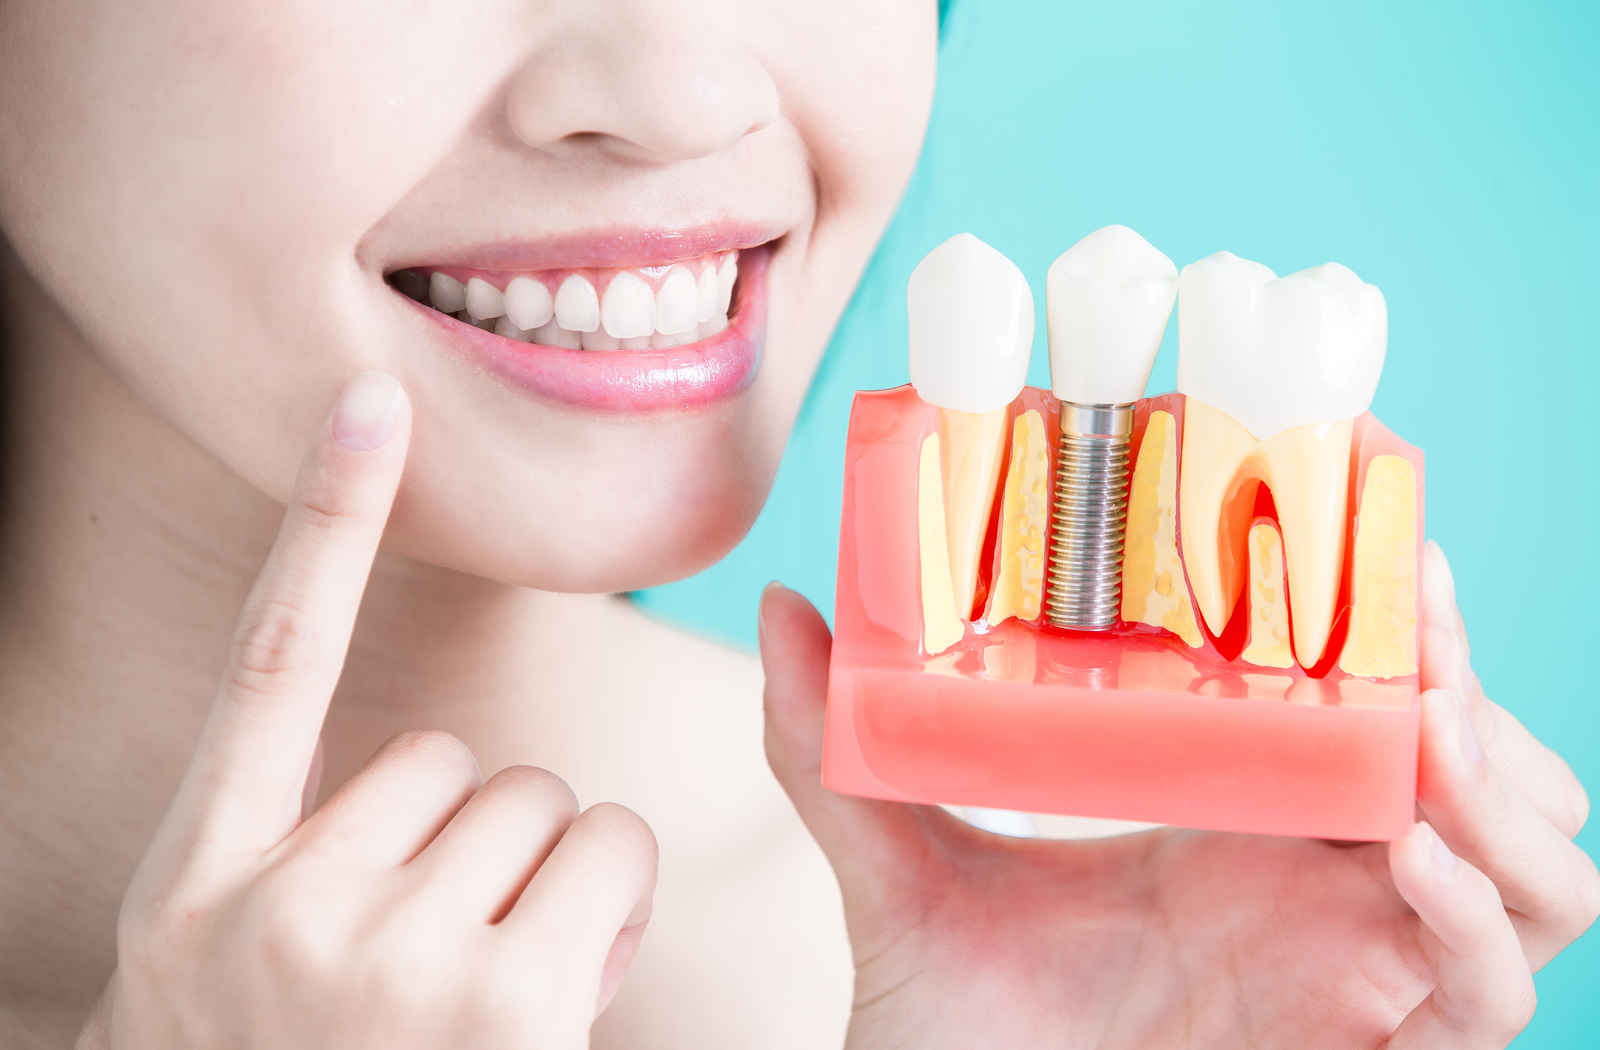 Belgravia Dental Studio: ваш путь к улучшению улыбки и здоровья зубов